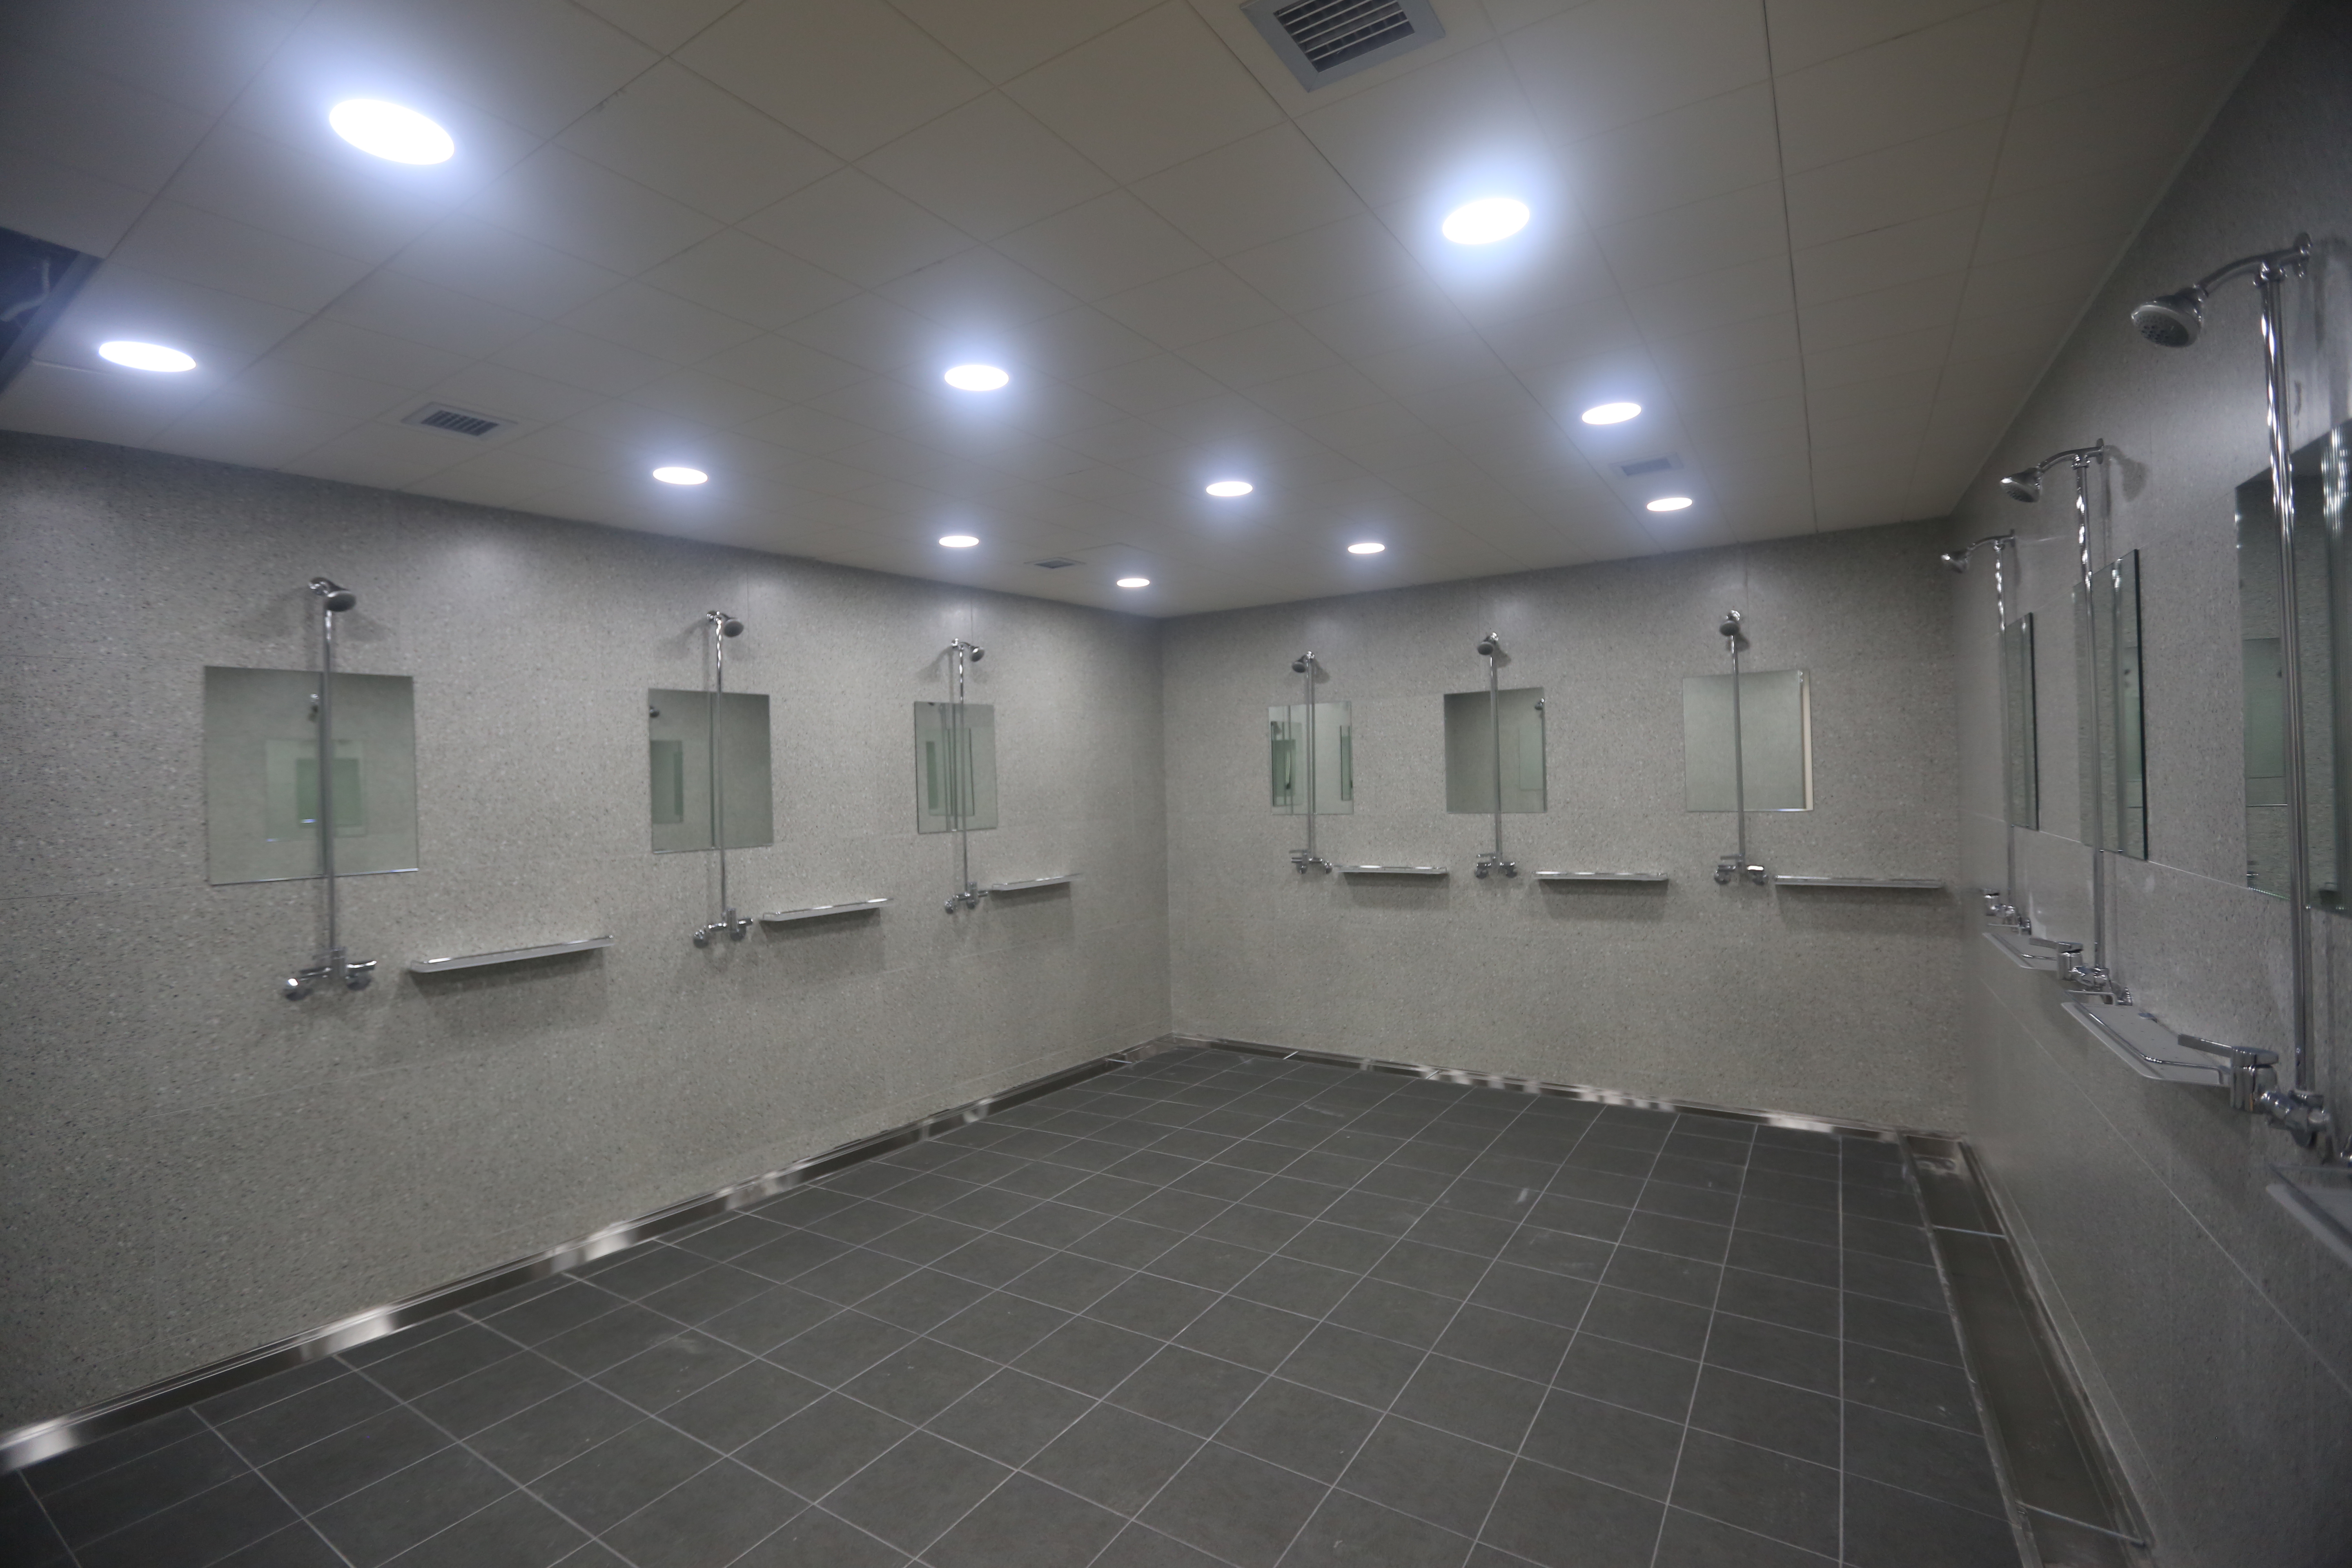 40년 만에 시설을 개선한 잠실야구장 원정팀 샤워실. 샤워기가 3개에서 11개로 늘었다. 서울시 제공